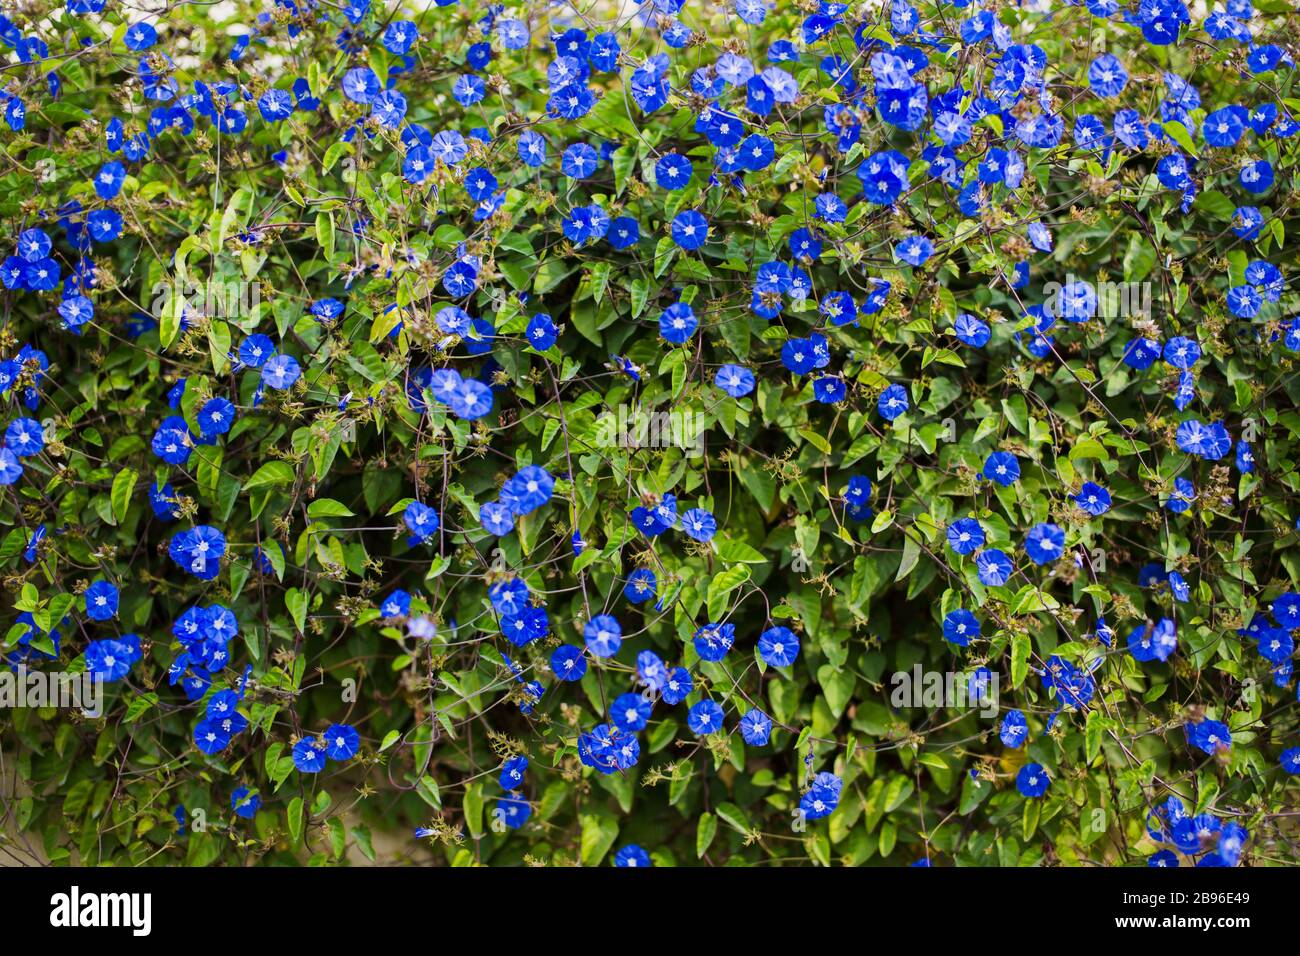 Wiese Pflanze Hintergrund: blaue Blümchen - Vergissmeinnicht hautnah und  grünen Rasen. Flachen DOF Stockfotografie - Alamy